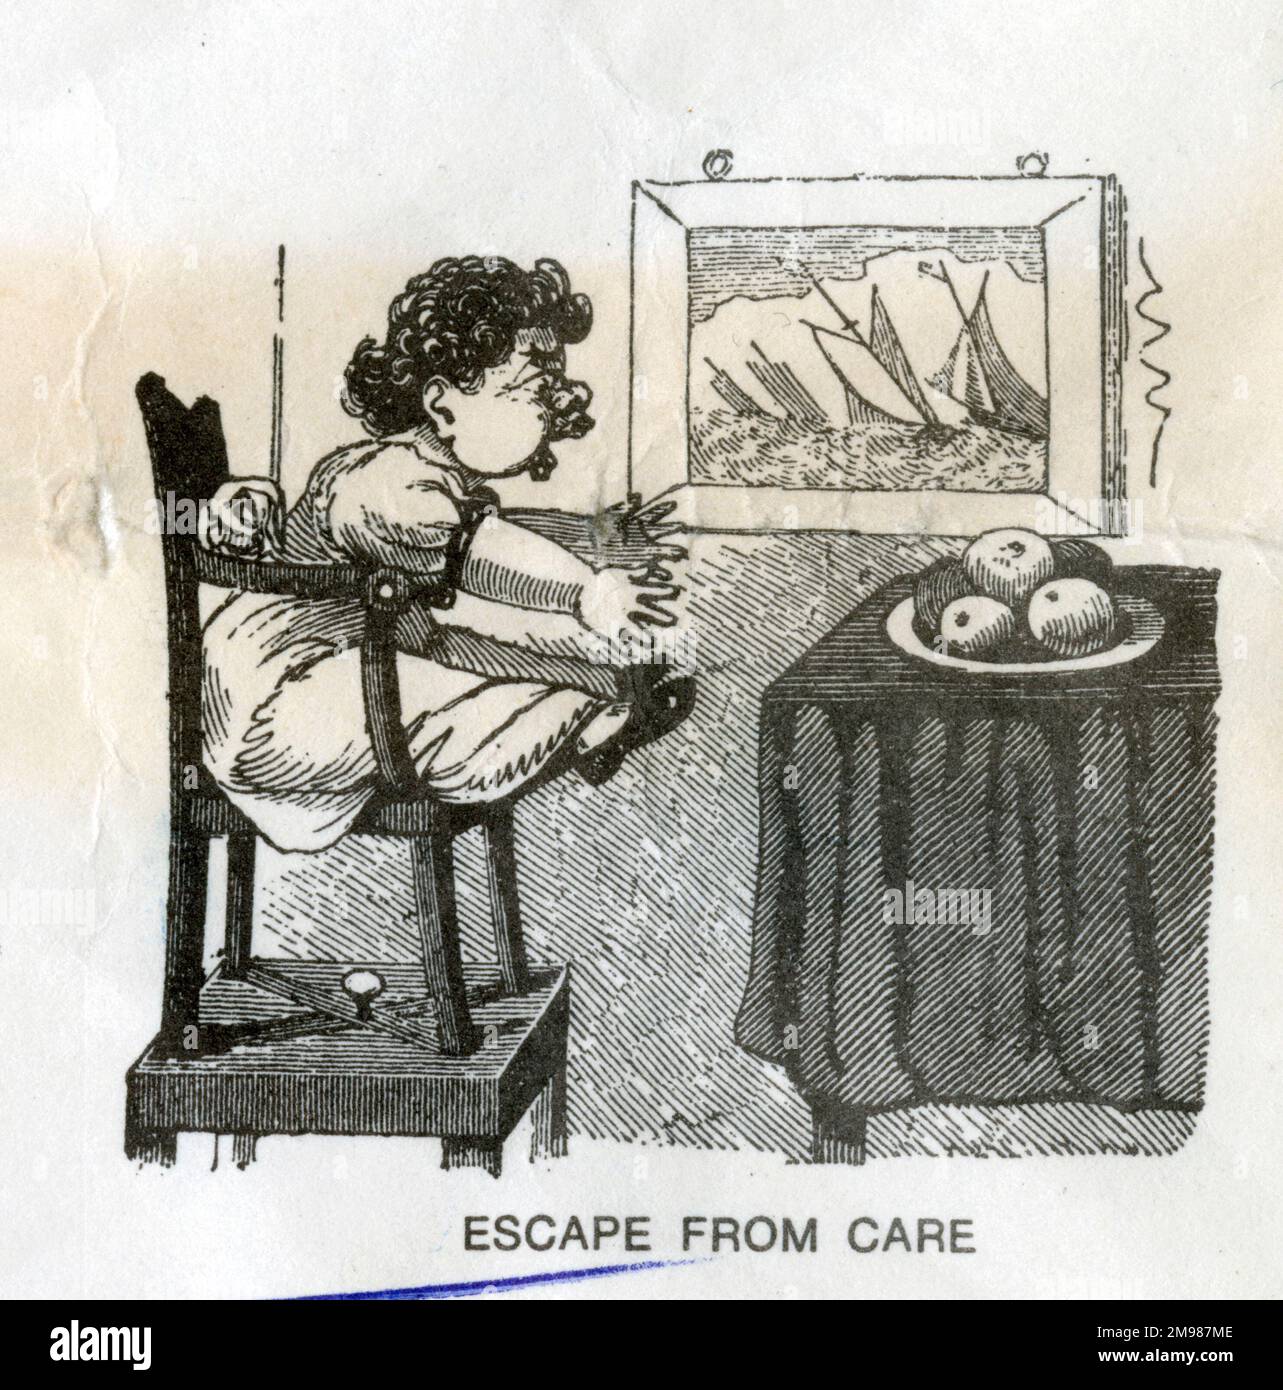 Hotel Bill - Escape from Care. Stock Photo